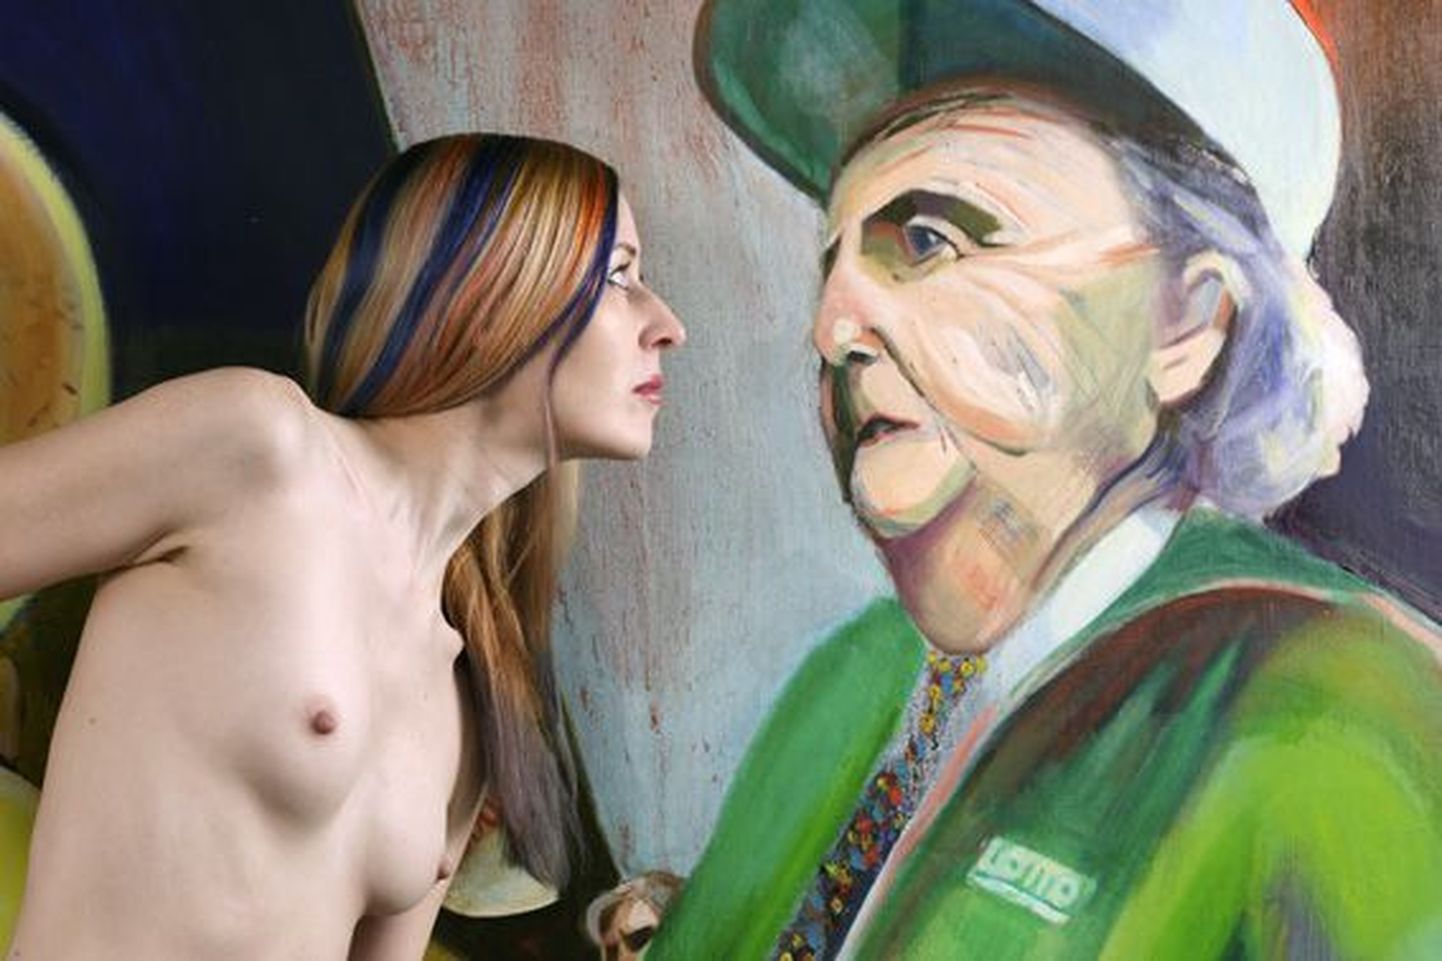 Küsimusele, kas ta oleks nõus 40 aasta pärast nõus alasti poseerima koos maaliga, kus joonistatud noor naine, vastas Fideelia, et ilmselt on, aga see oleneb sellest, kui rahul ta siis oma kehaga on.